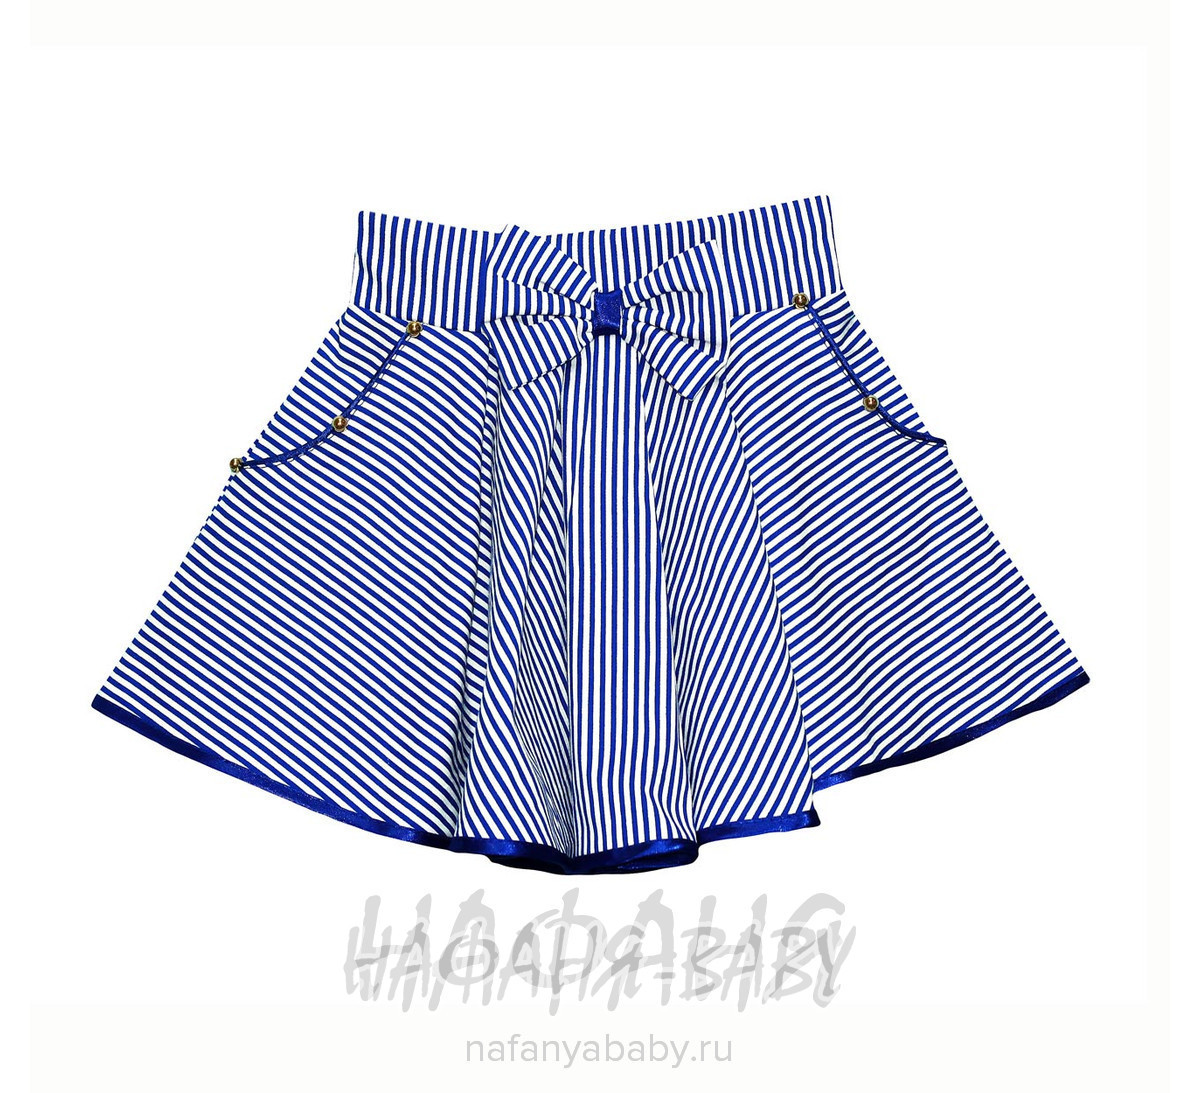 Детская юбка AGEMI, купить в интернет магазине Нафаня. арт: 2235.